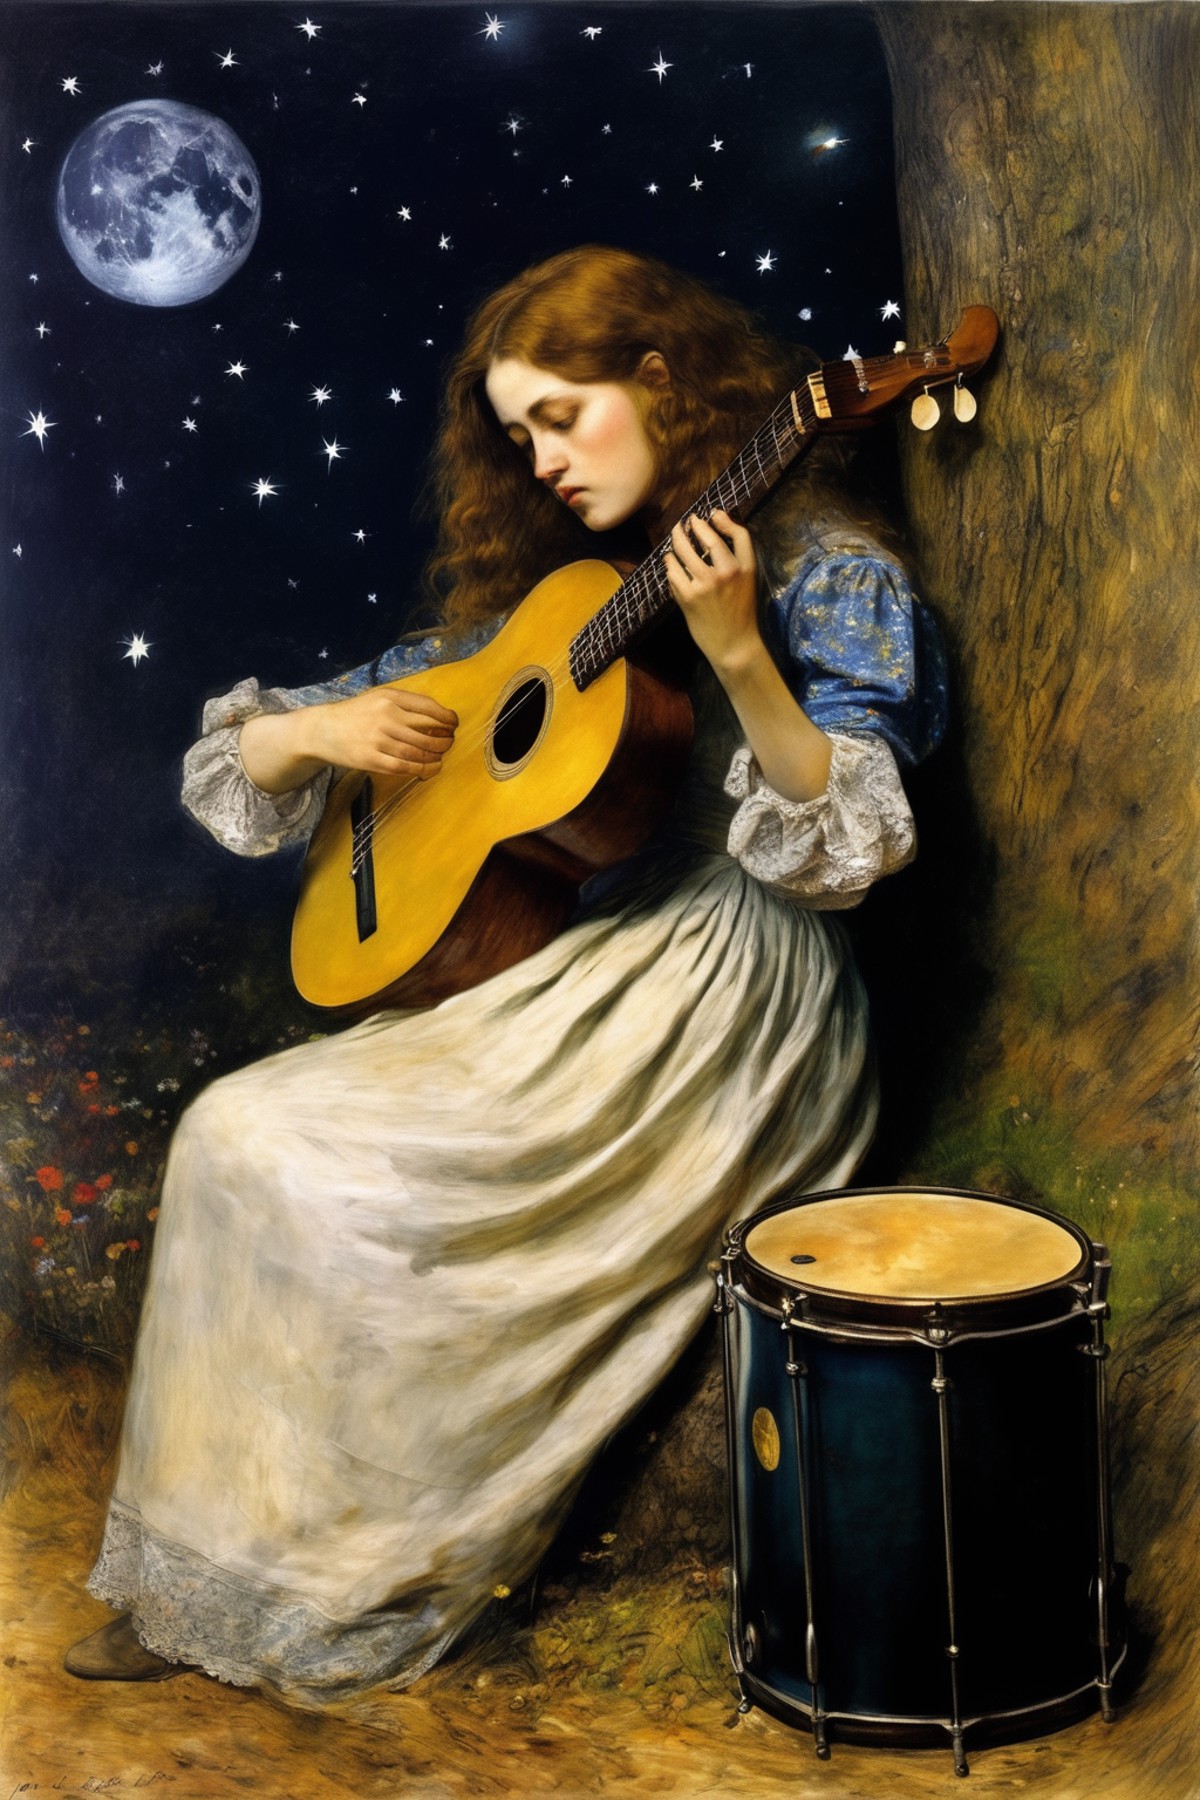 John Everett Millais Style - mir al silencio y vi campos de estrellas. Y un Arpa callada y a Ofelia muerta. In the drums i...